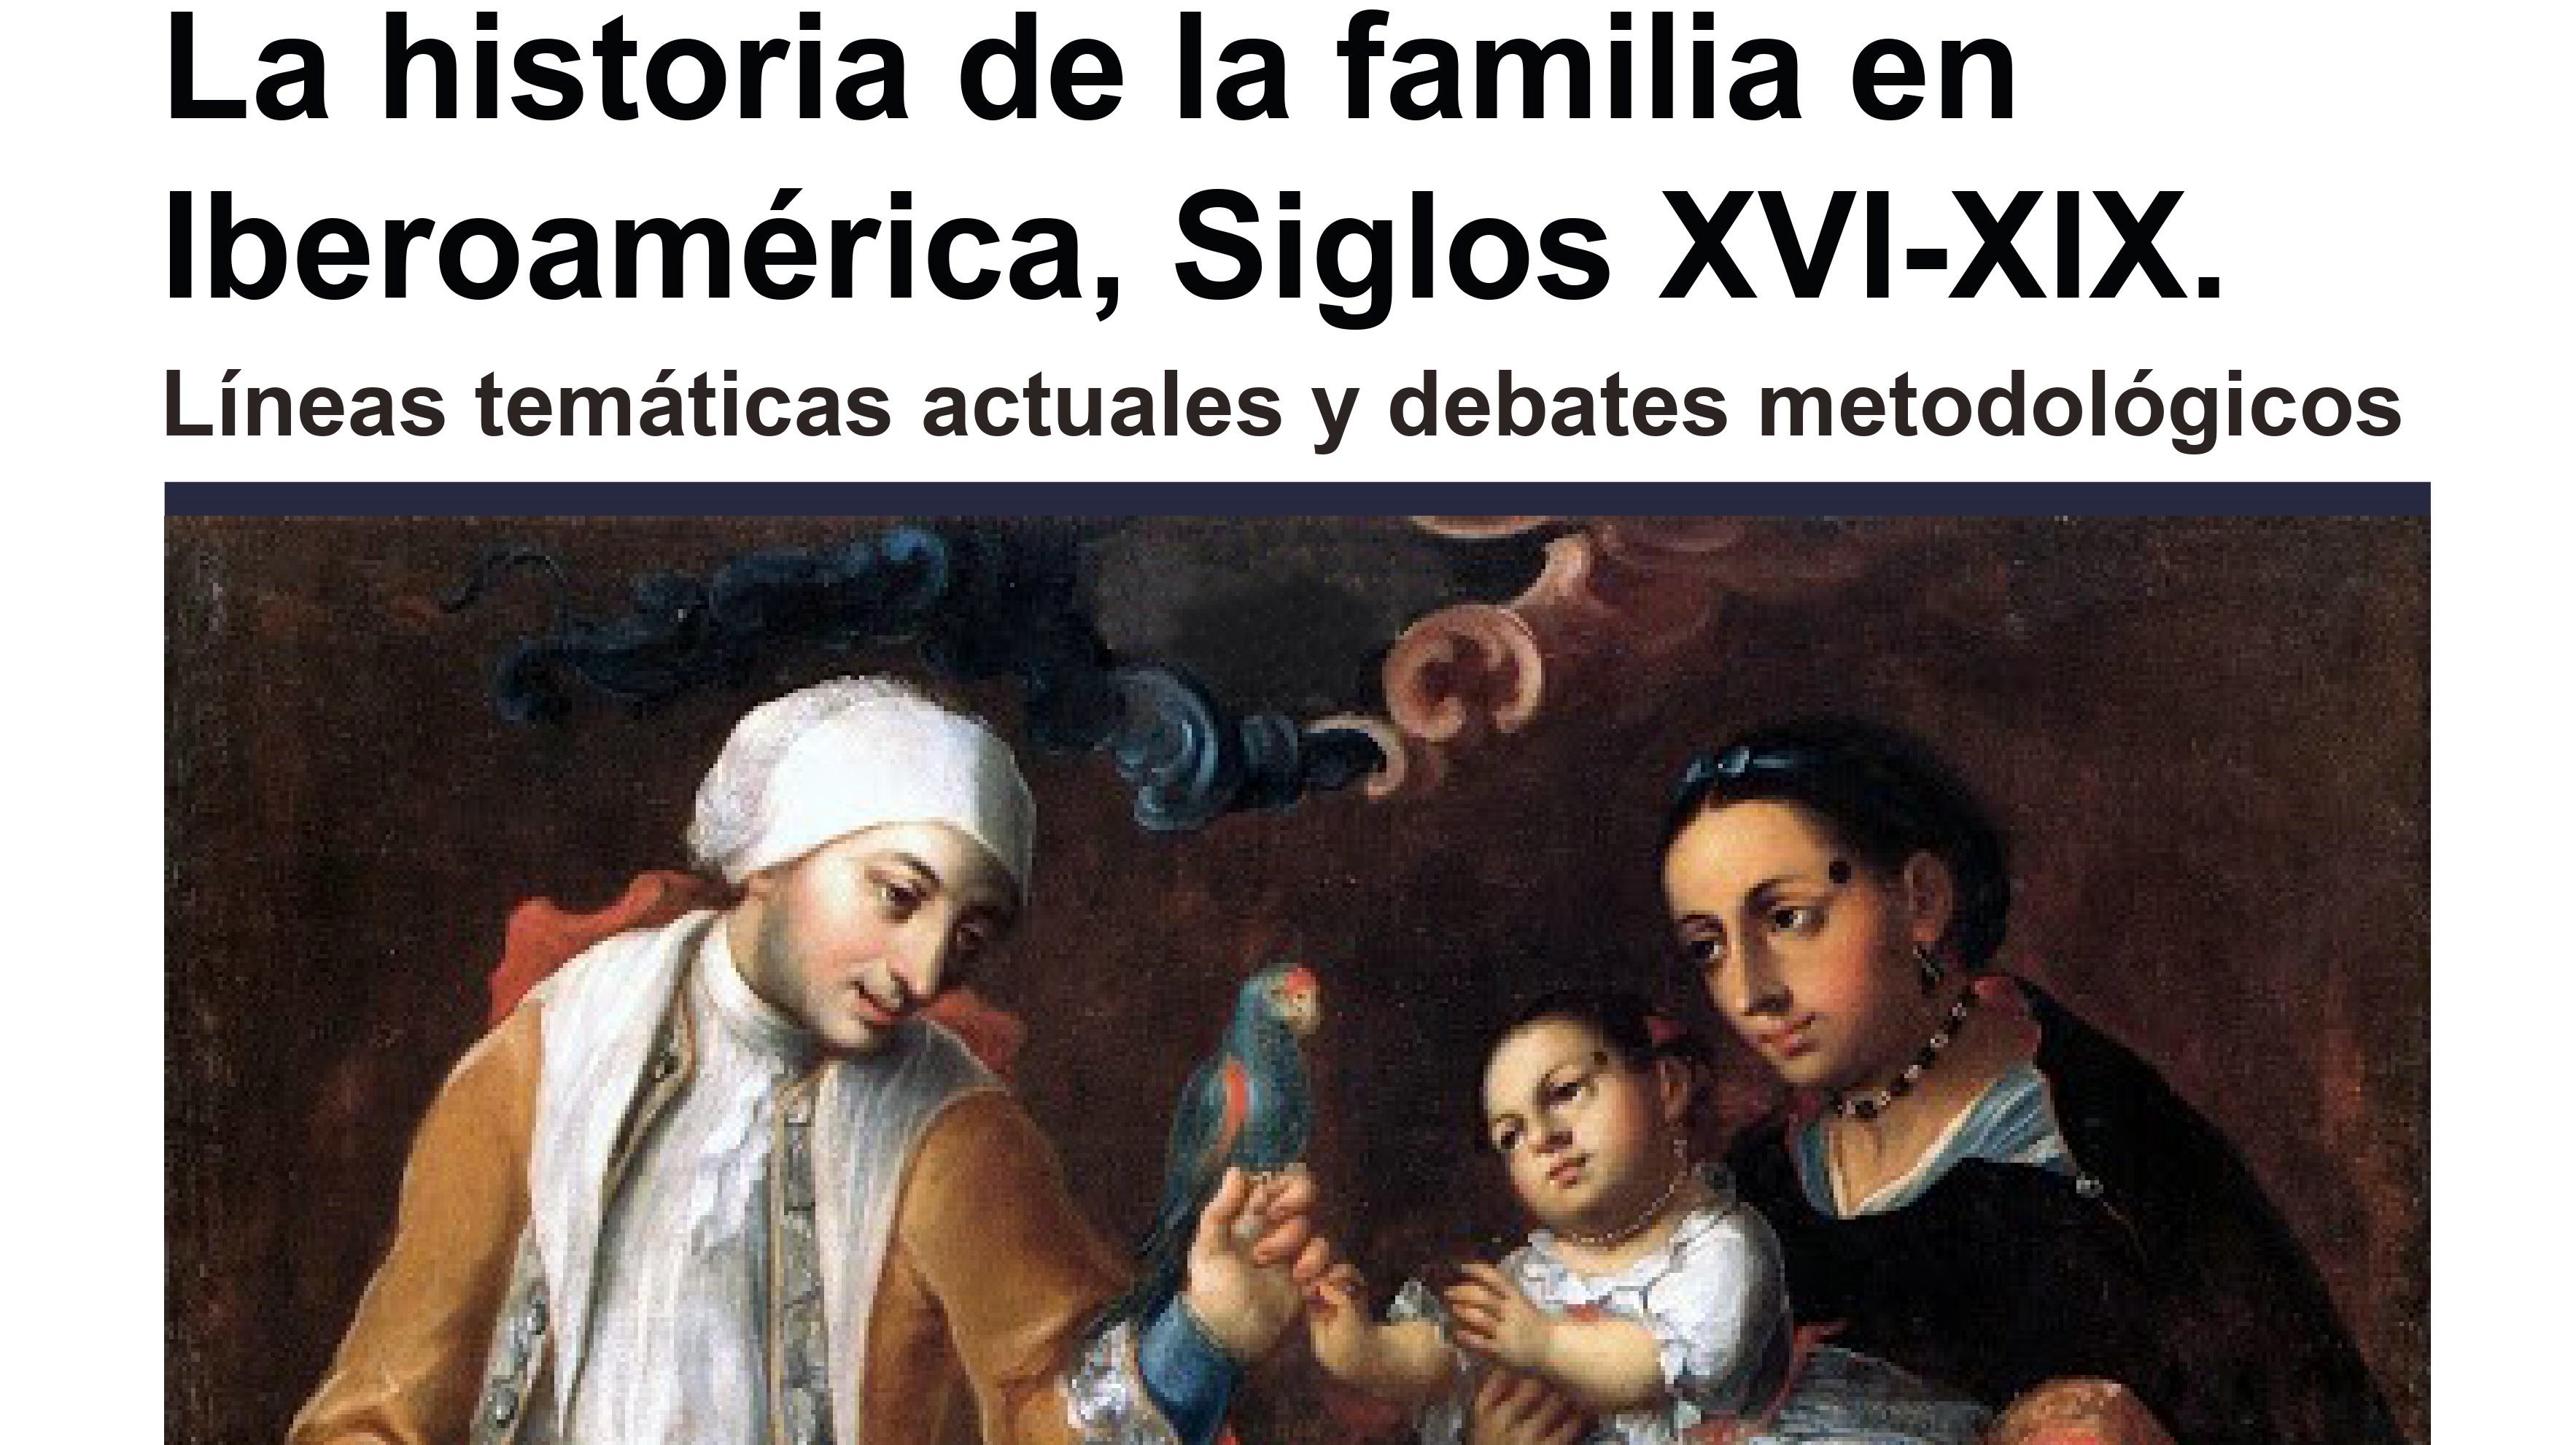 Mesas redondas, familias iberoamericanas